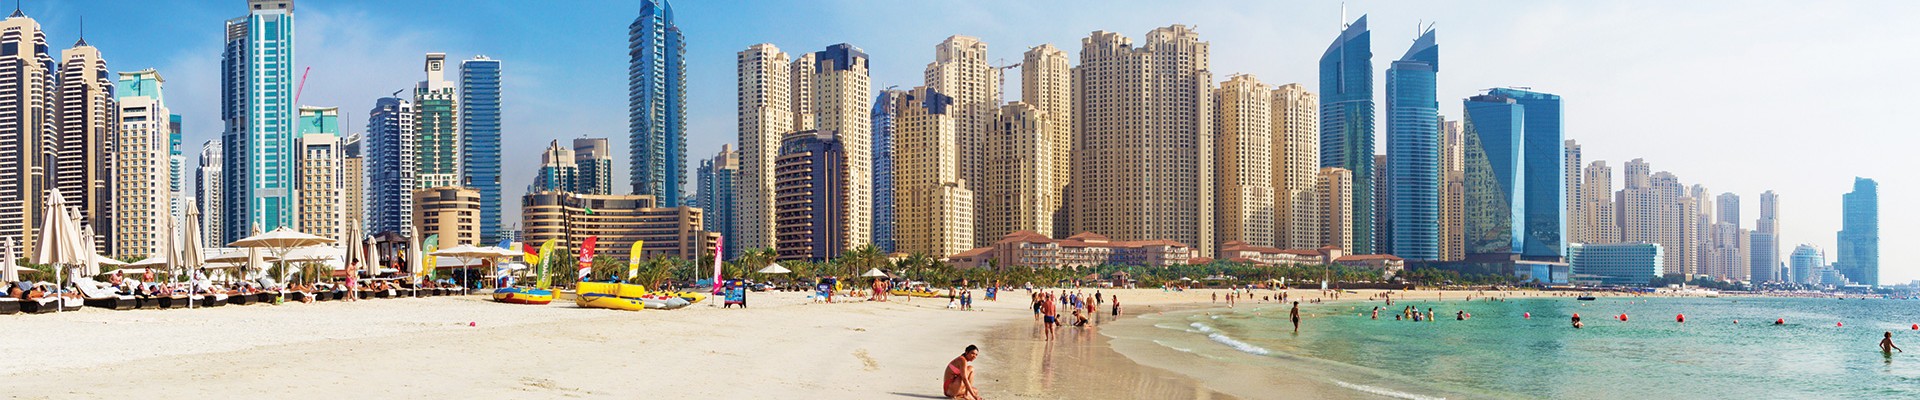 5* JA Ocean View Hotel - Dubai Package (5 nights)